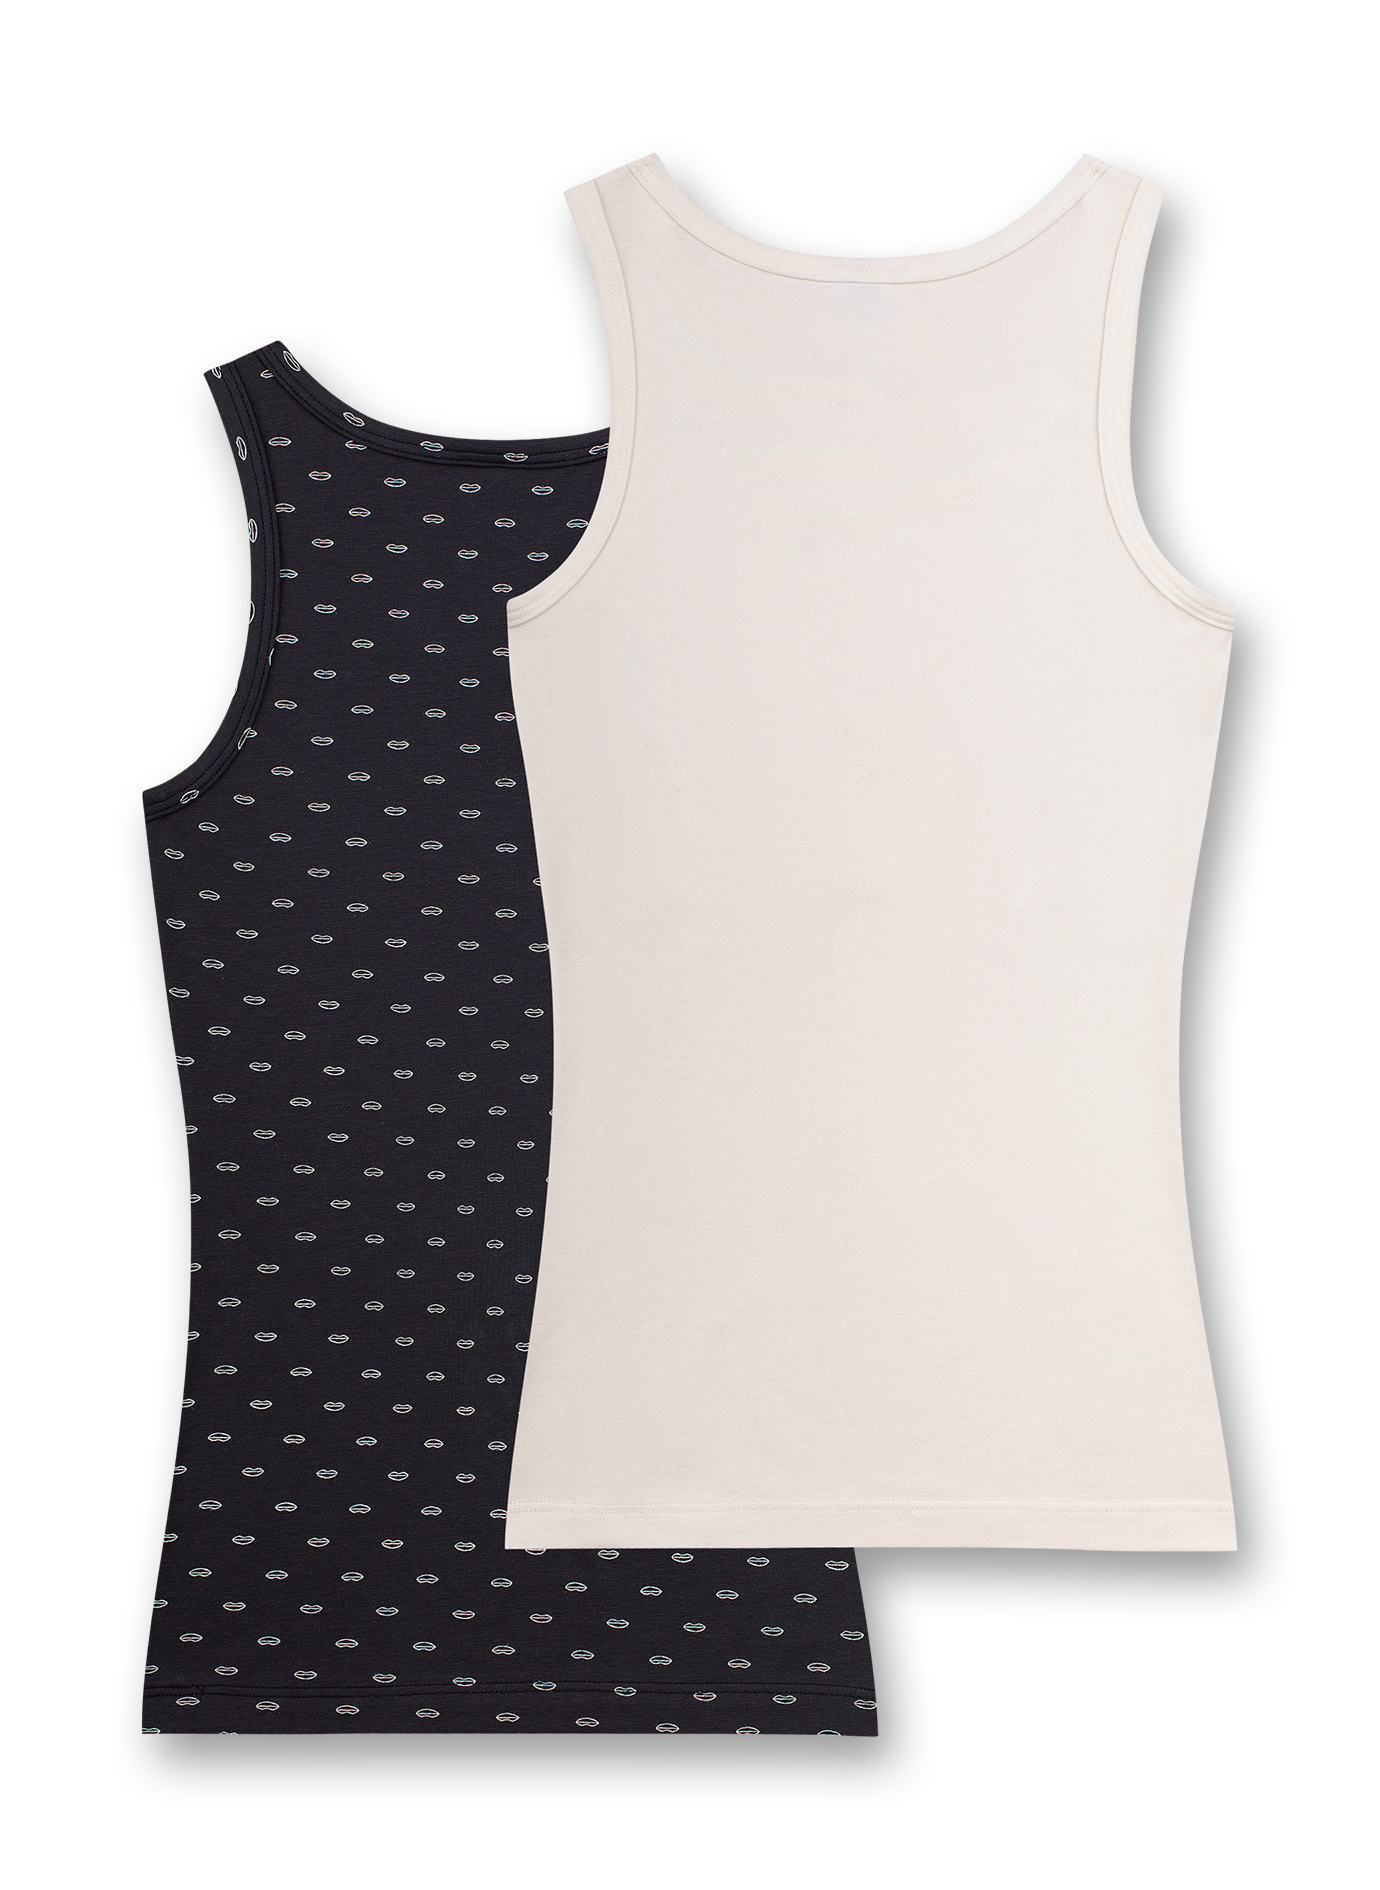 Mädchen-Unterhemd (Doppelpack) Dunkelgrau und Off-White